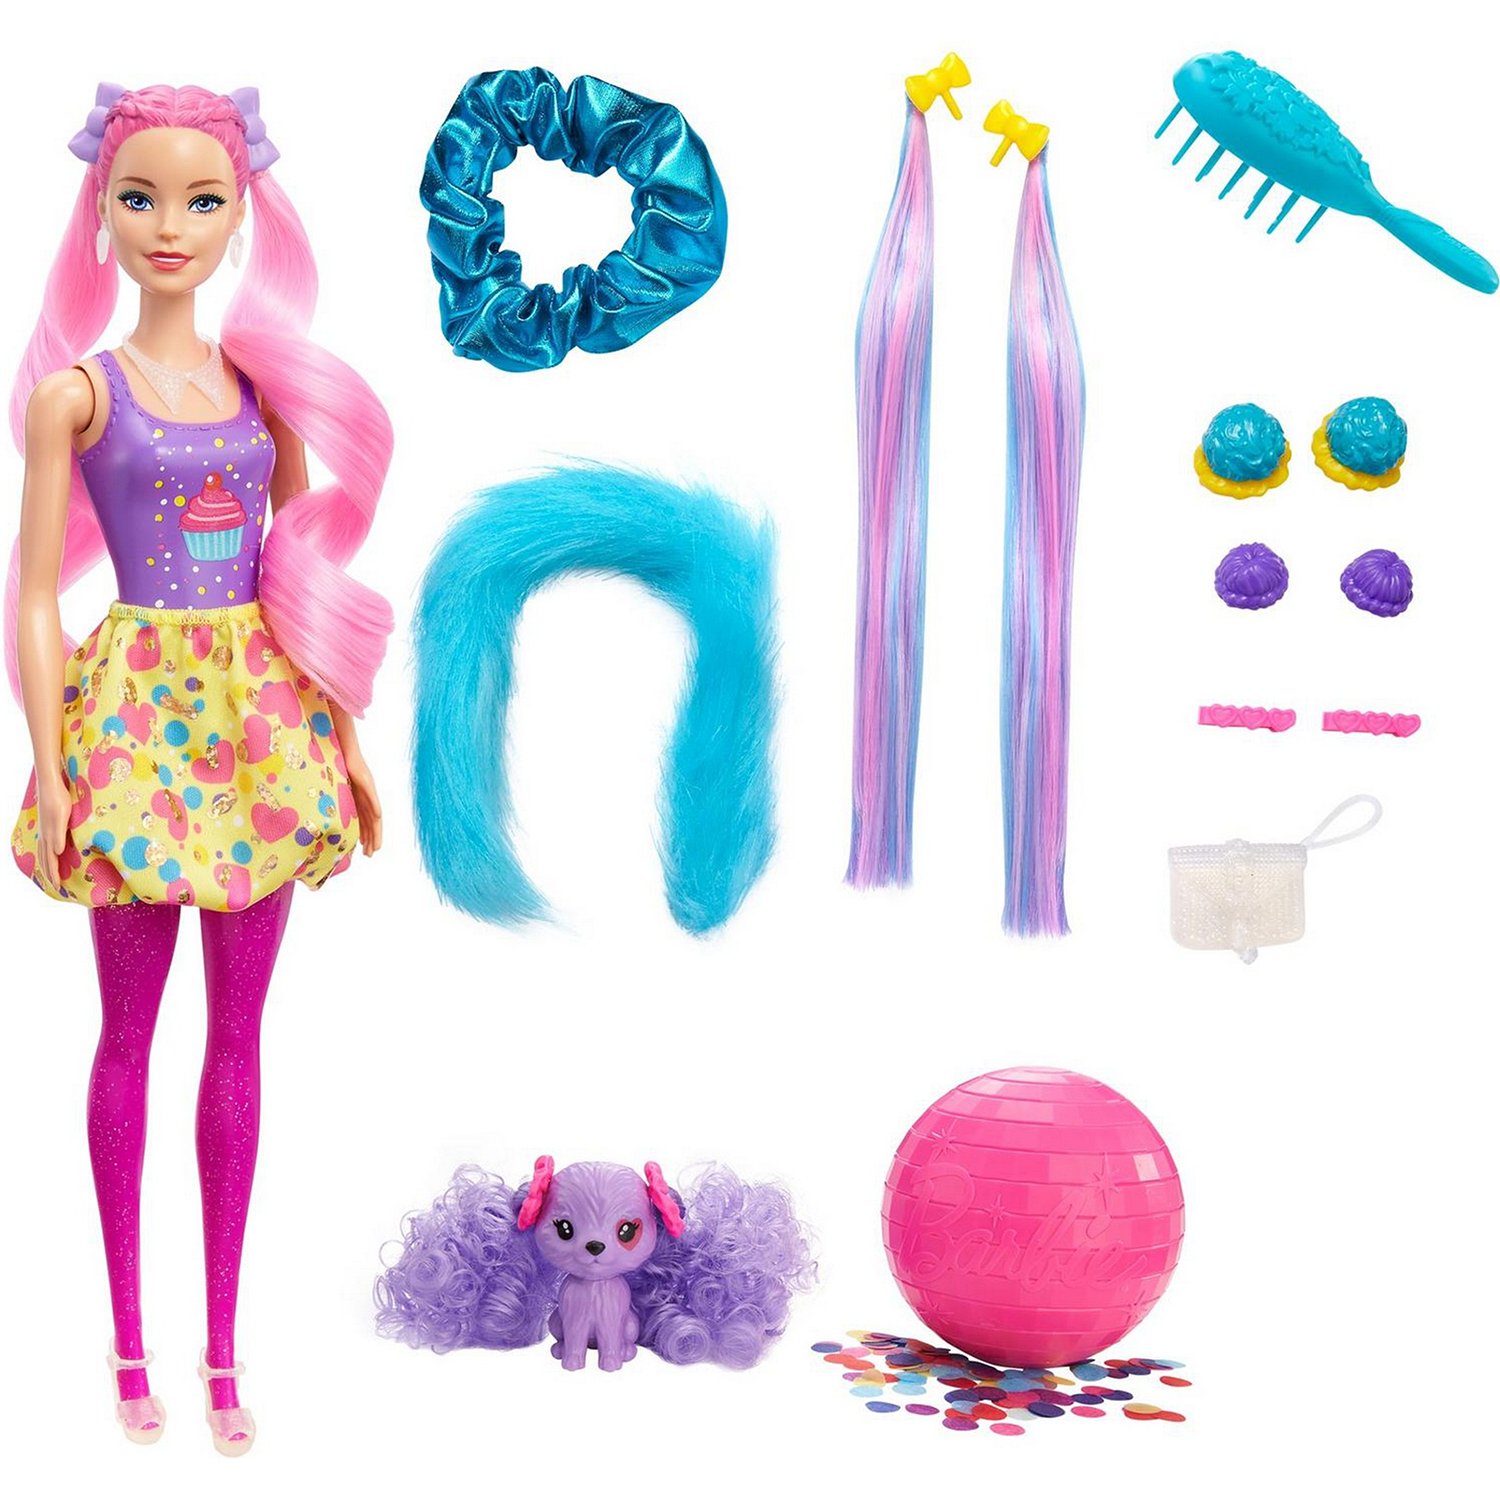 Кукла Barbie Сюрприз из серии Блеск: Сменные прически в непрозрачной упаковке 25 сюр